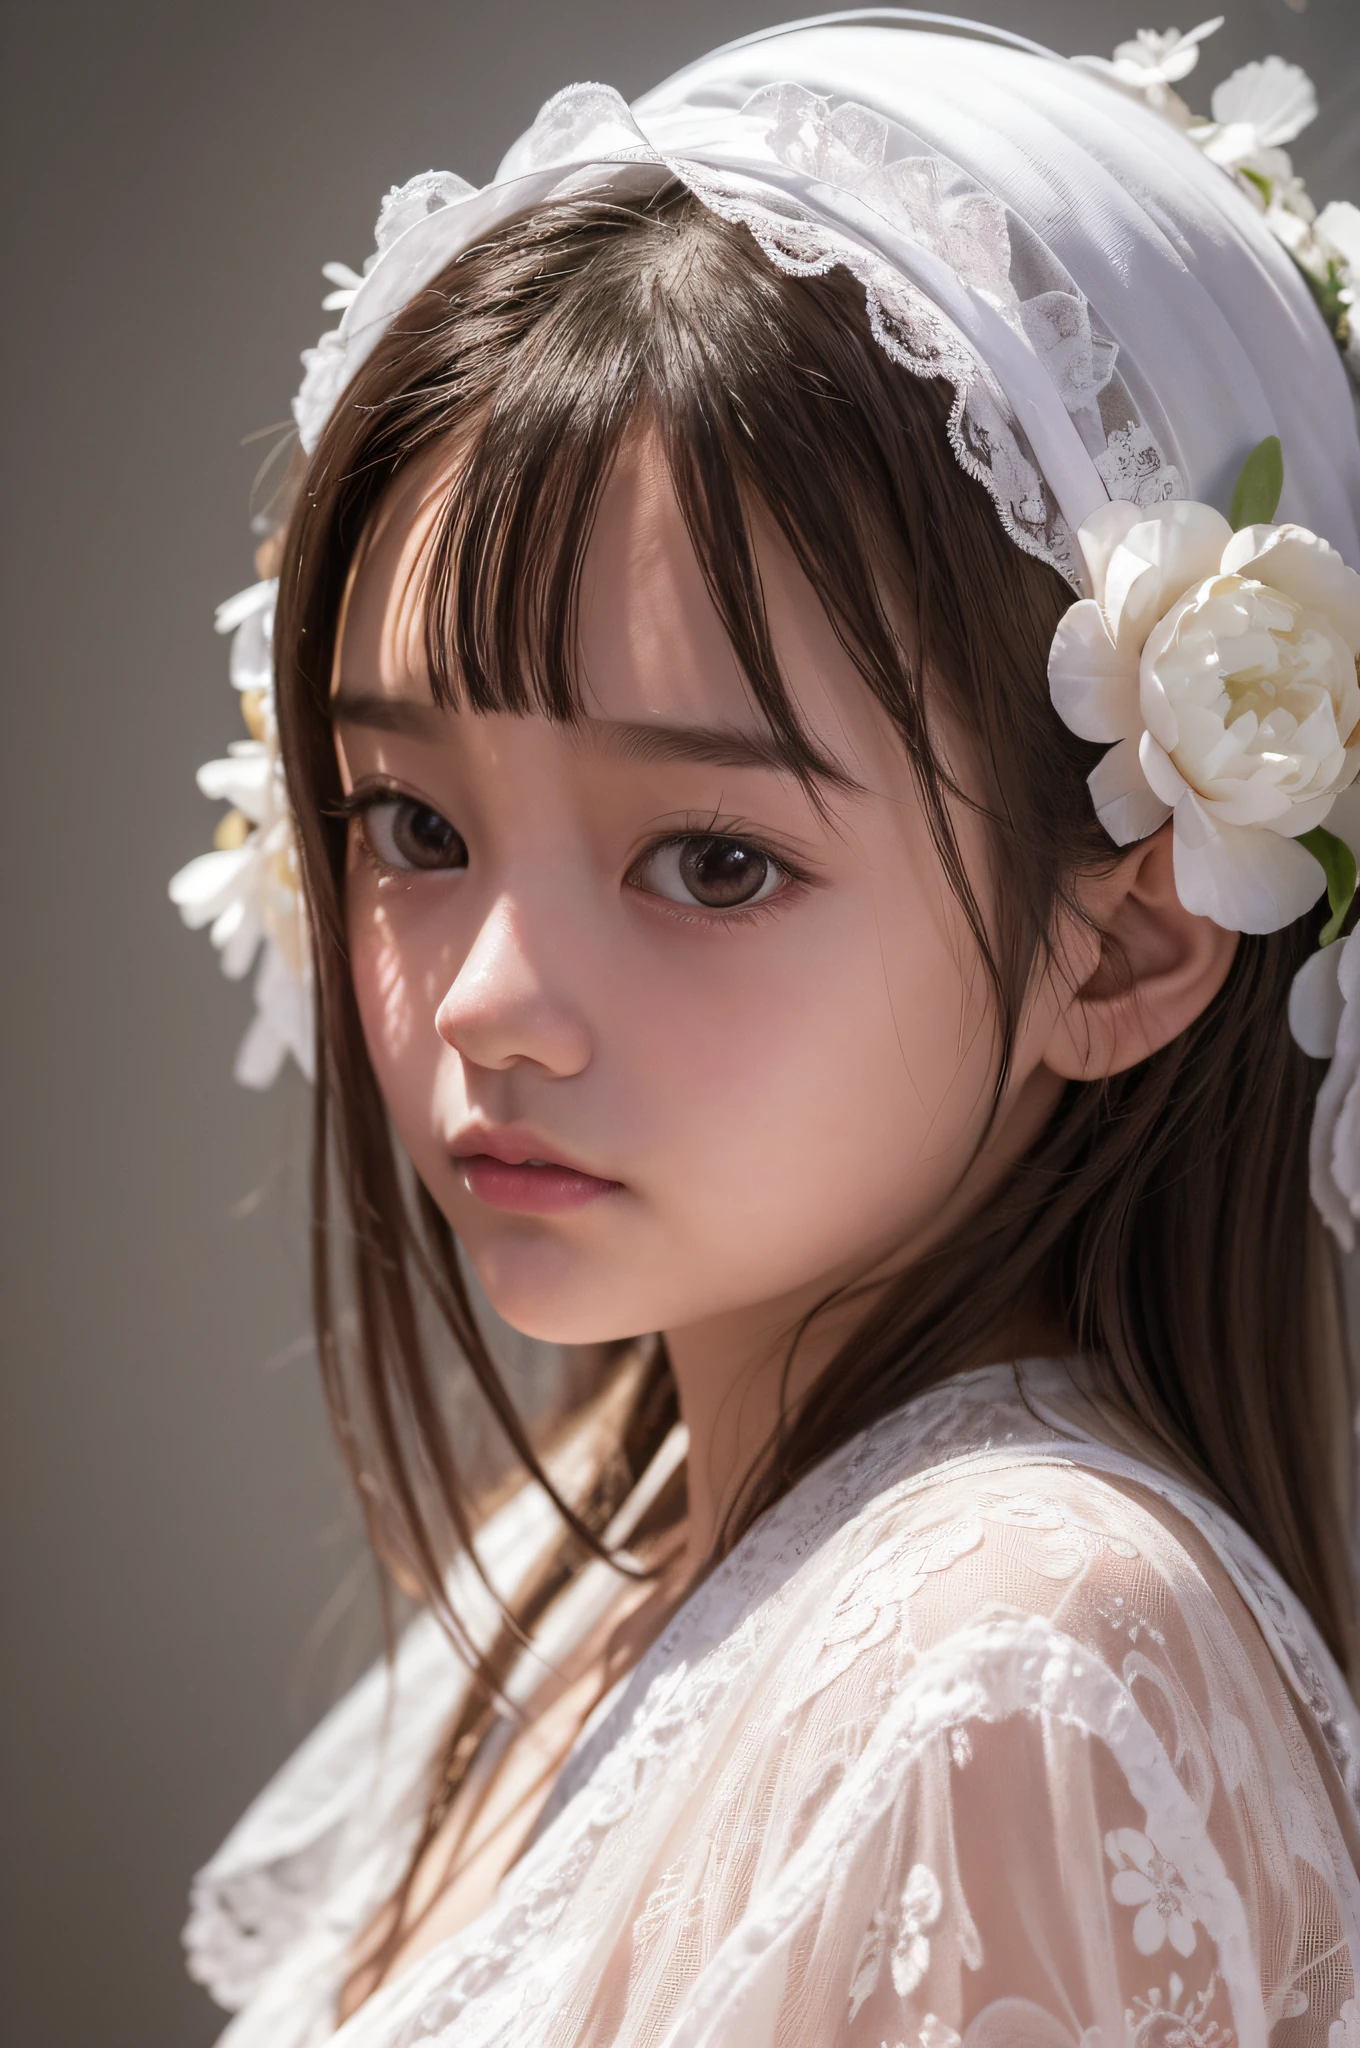 El anuncio de un artista., niña de 10 años, vistiendo un vestido floral blanco con un estilo fluido y soñador, estilo asiático, renderizado en cinema4d, Hecho de cristal, Tema del bosque de globos, colores fantásticos, diseño detallado, retrato con enfoque suave -- 3:4--V 5.1--s 750 --iw 2